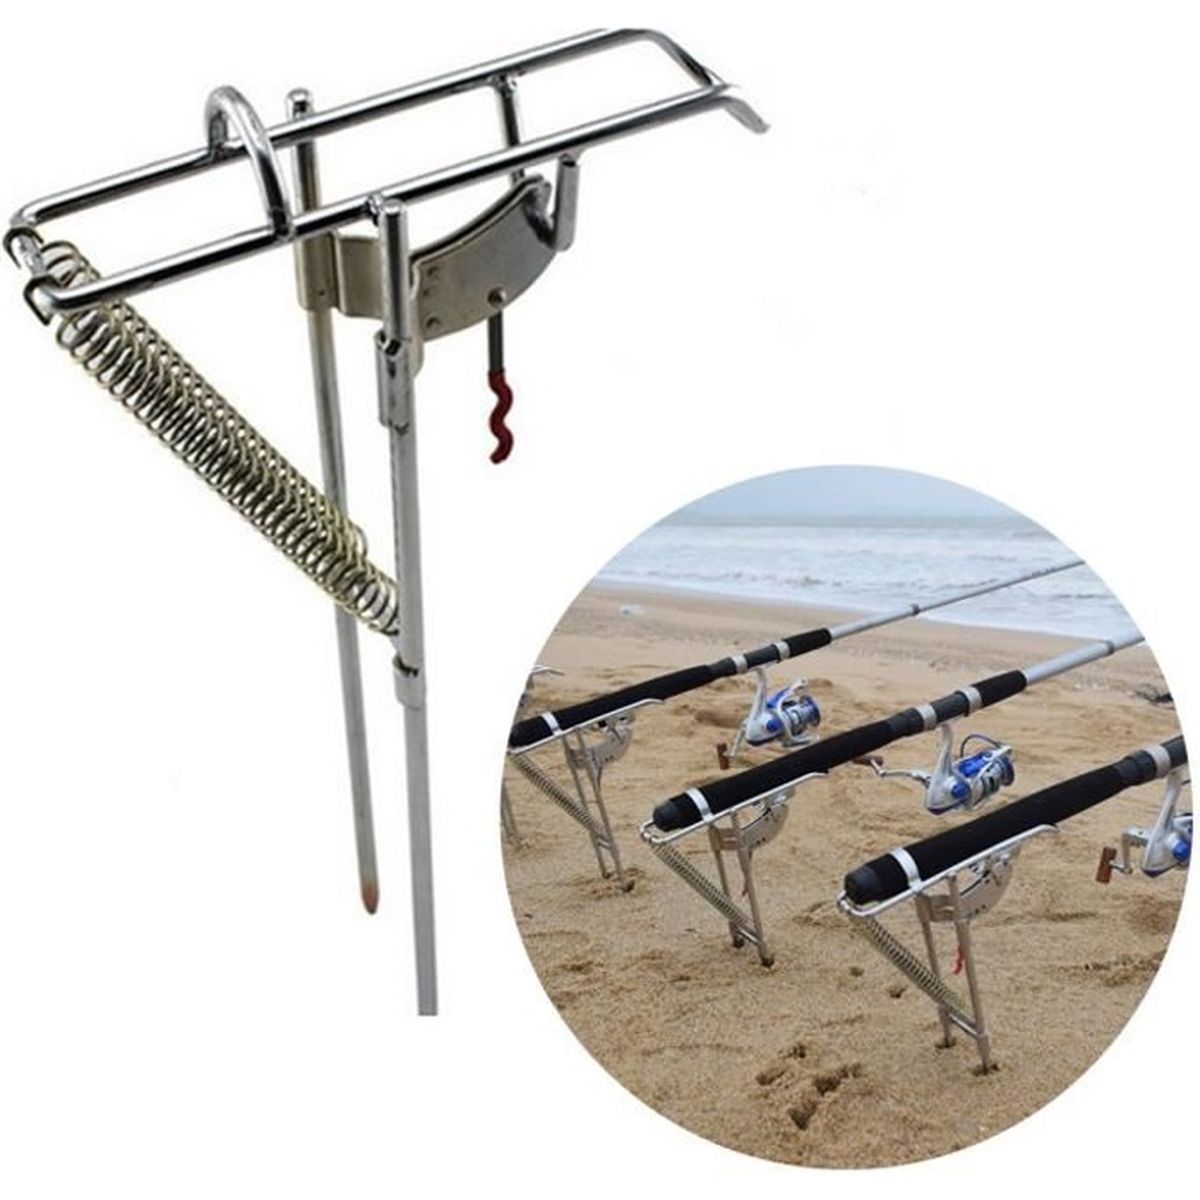 pour 4 cannes Arapaima Fishing Equipment Kit de support pour cannes à pêche avec supports et détecteurs